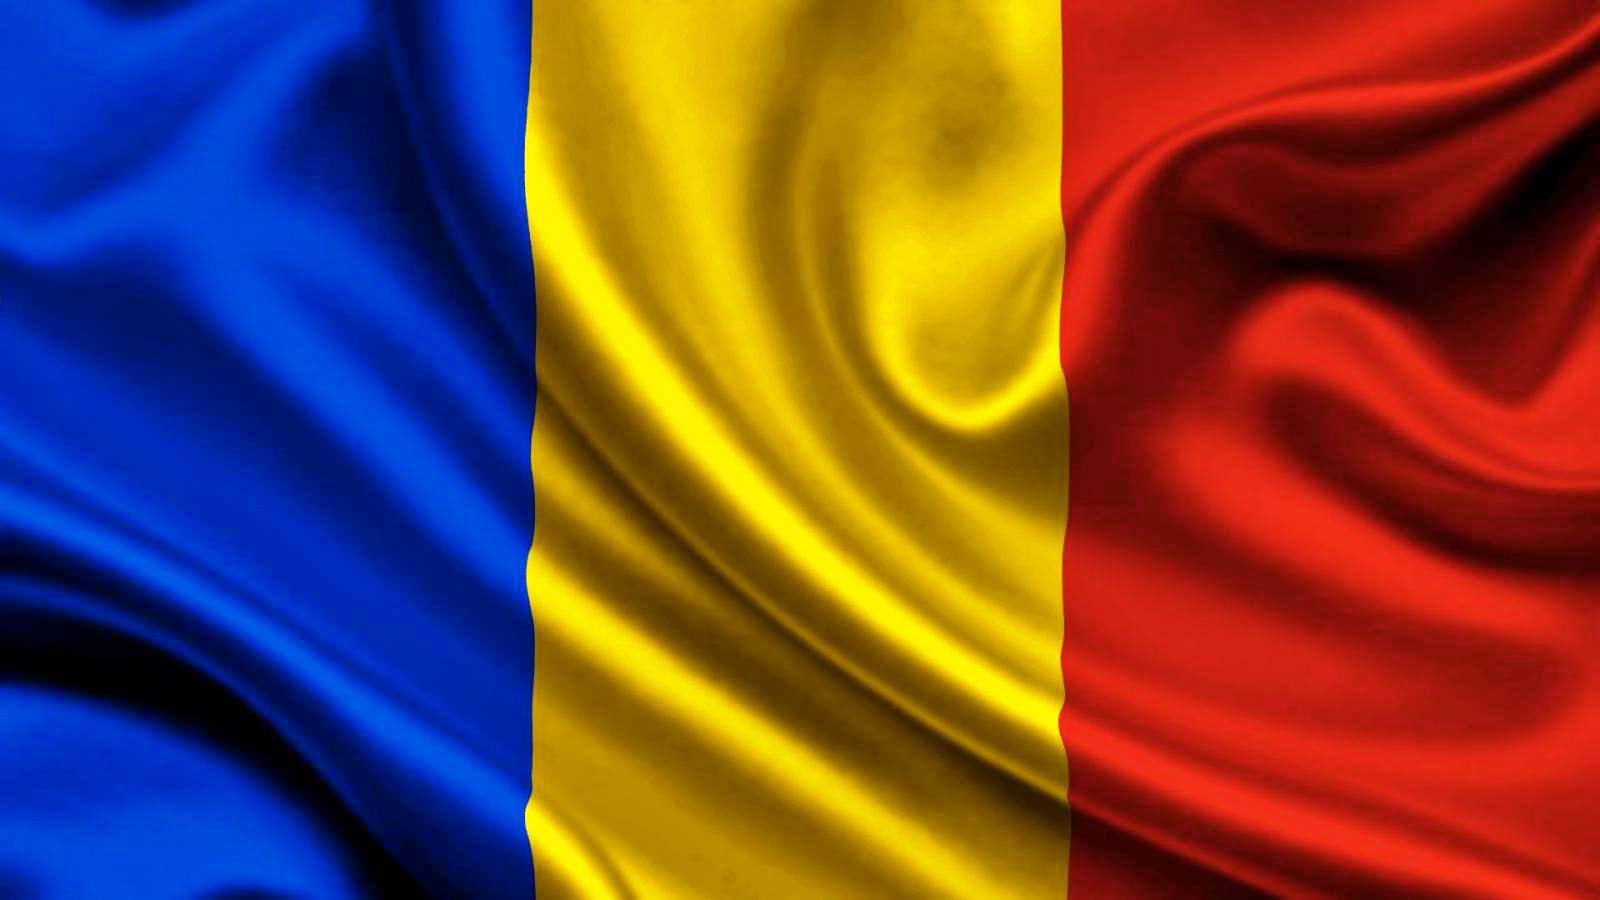 Incidentiecijfers van Roemeense provincies 13 januari 2022